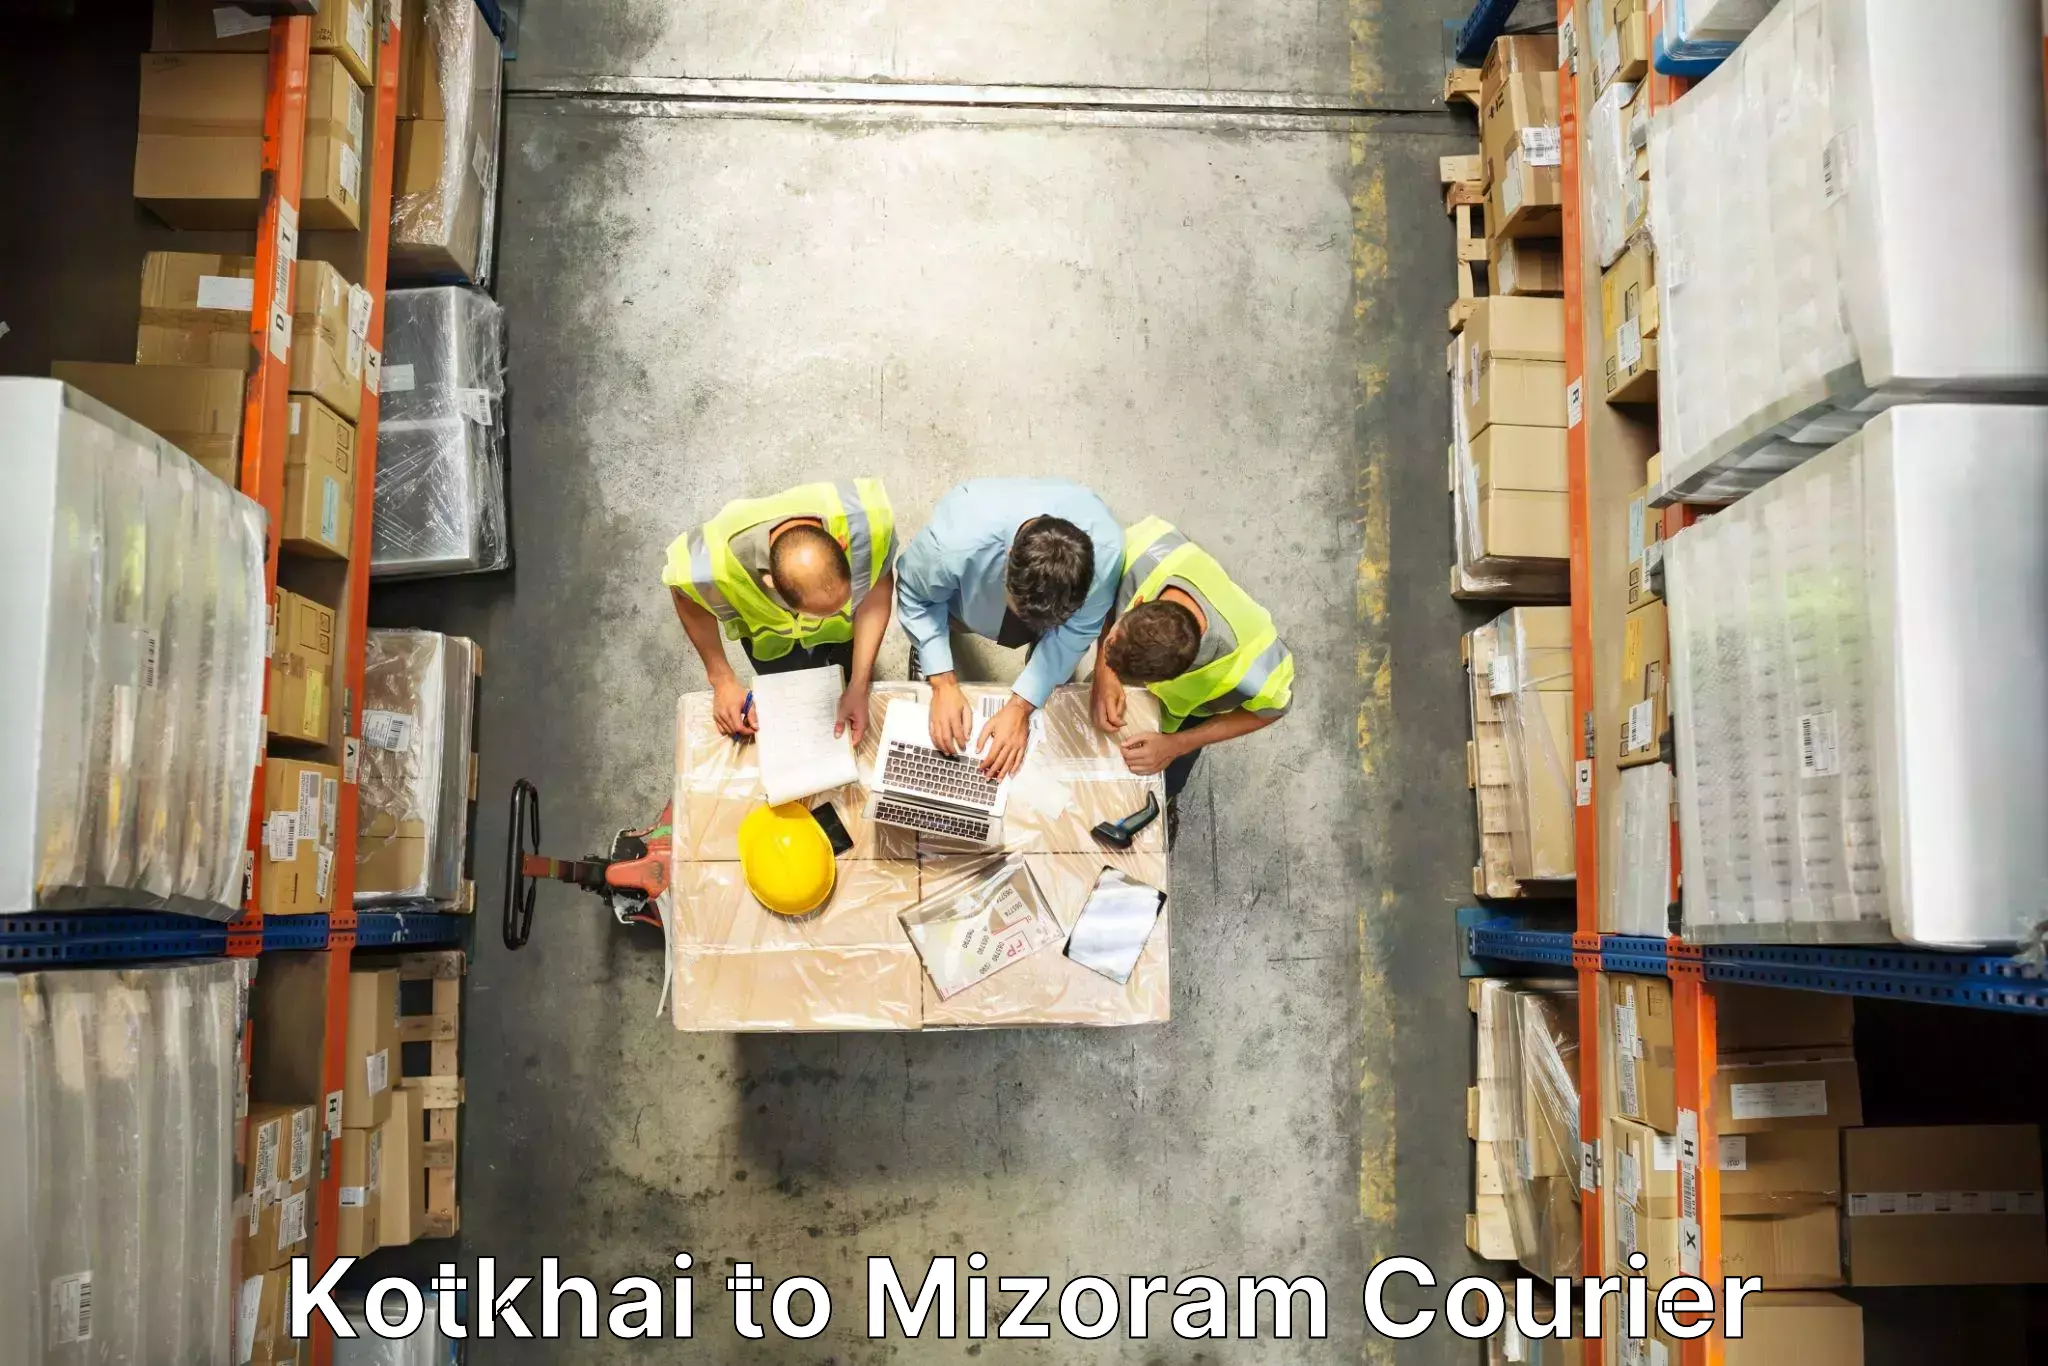 Furniture transport experts Kotkhai to Mizoram